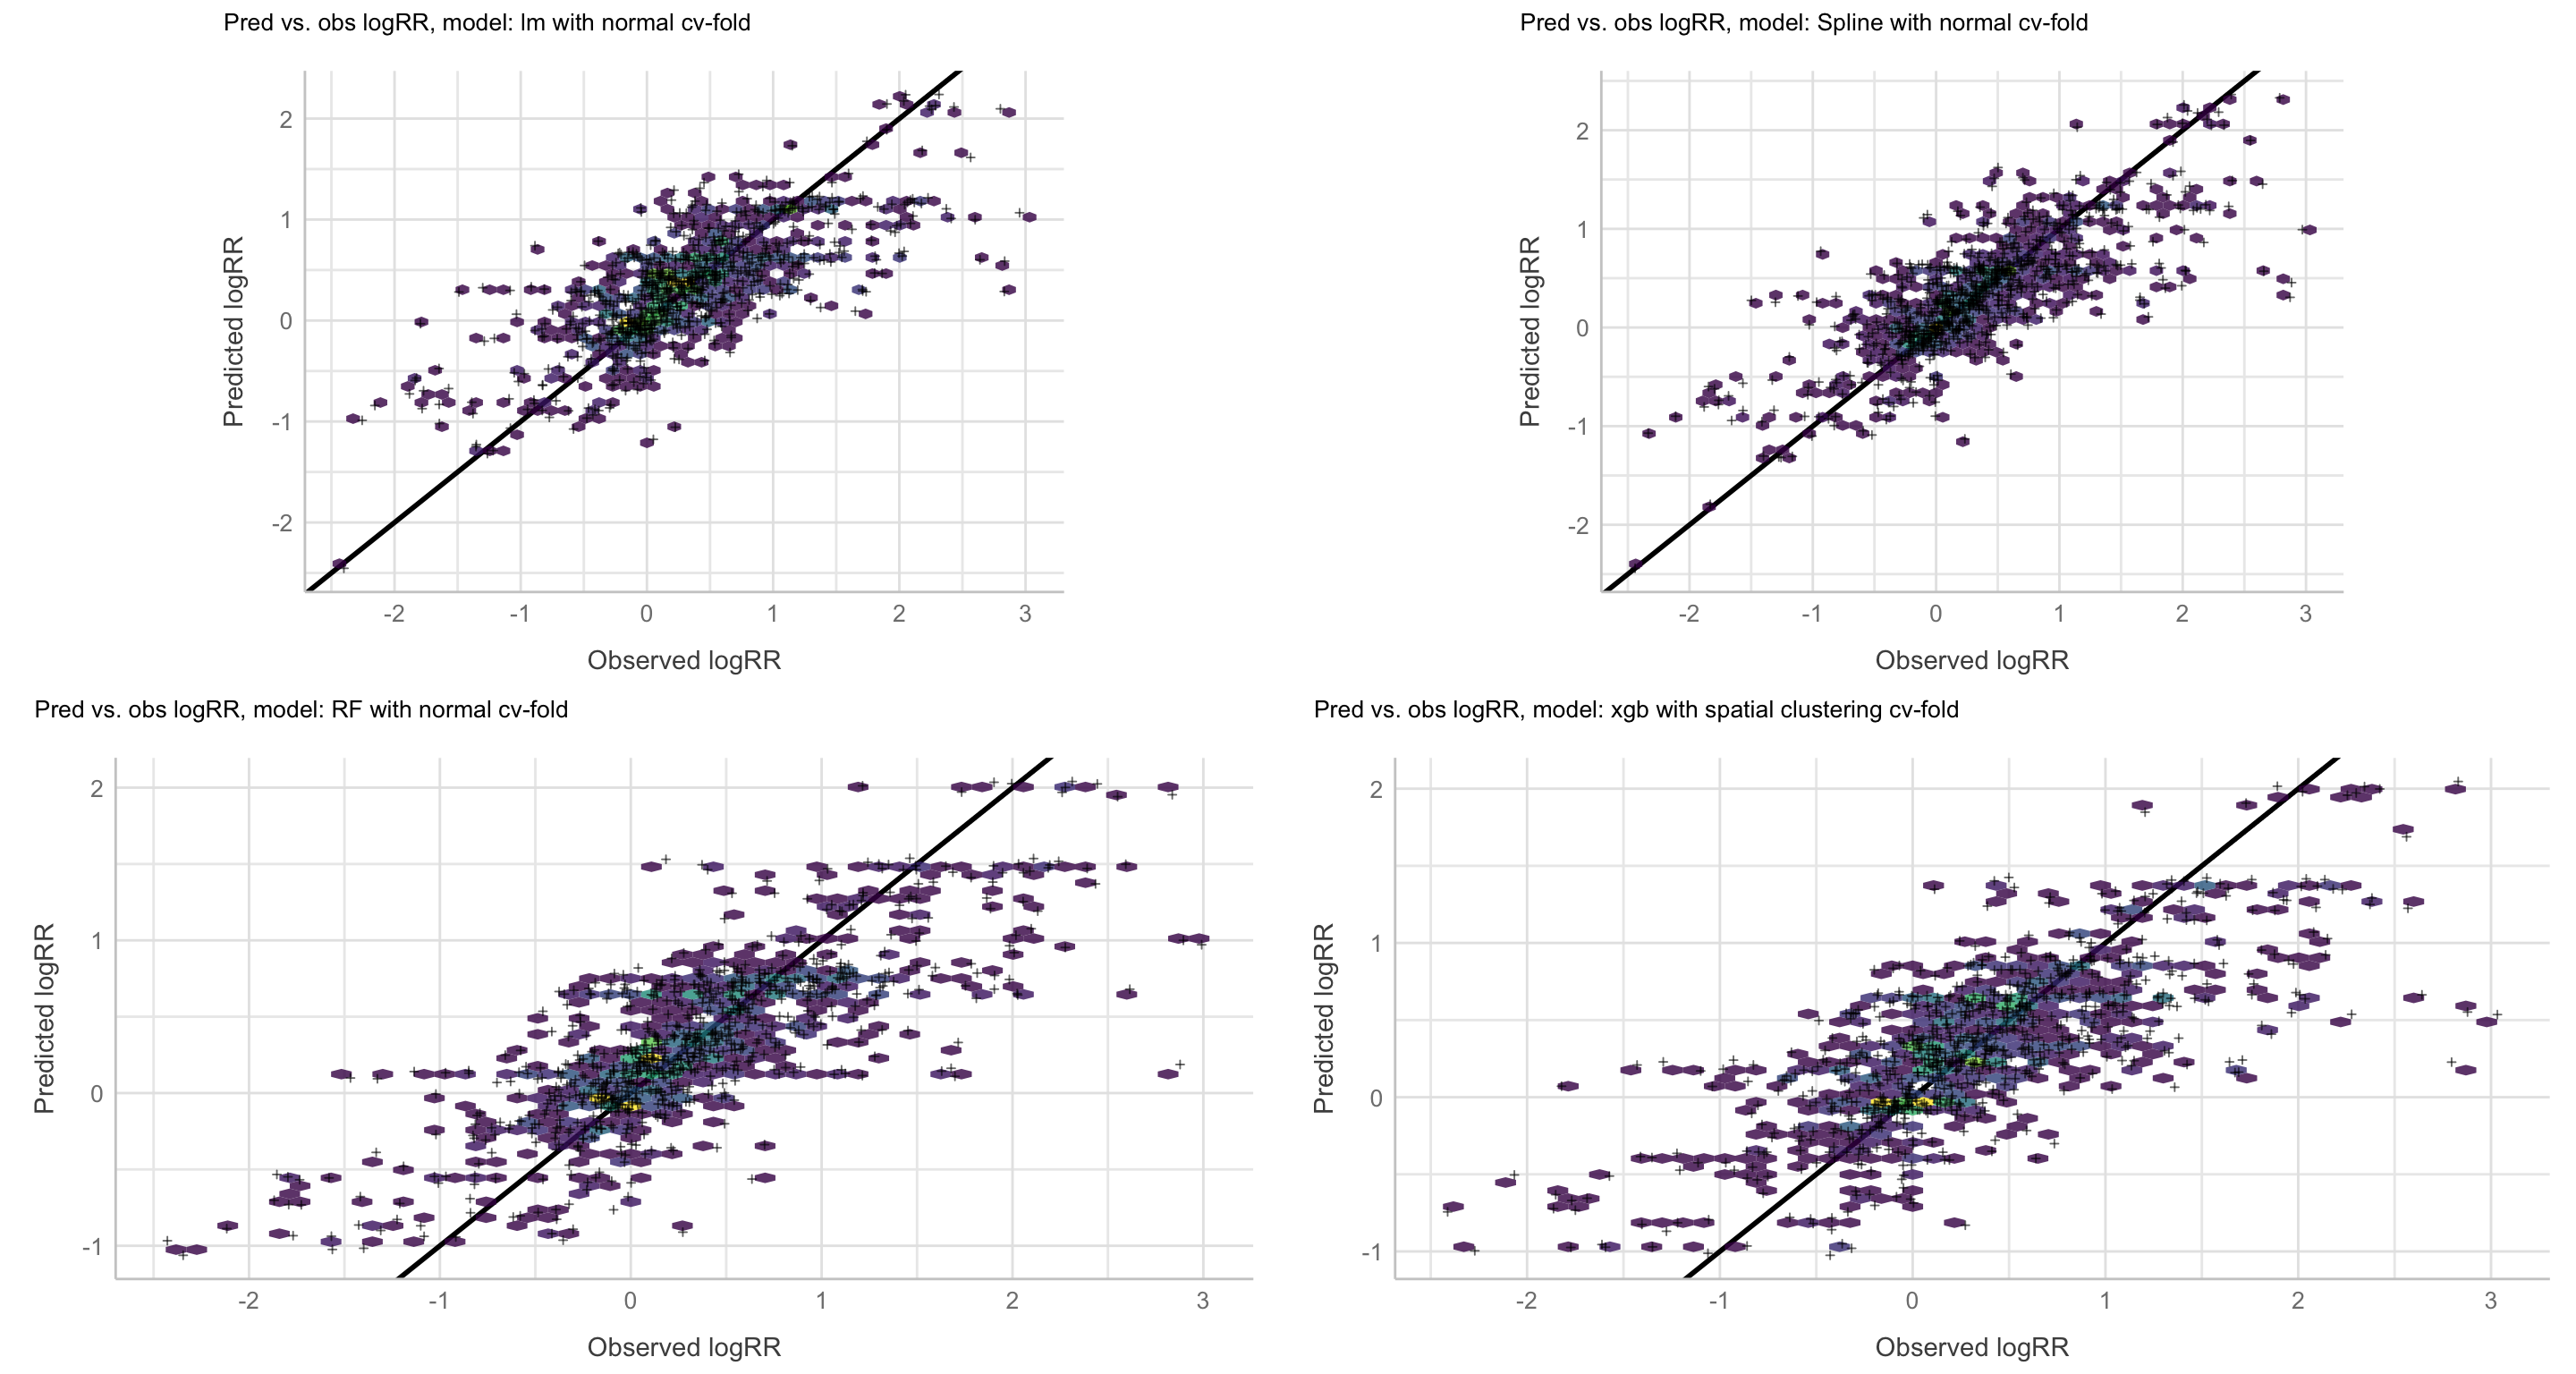 Predicted vs. observed logRR values, resampling: Normal cv-folds